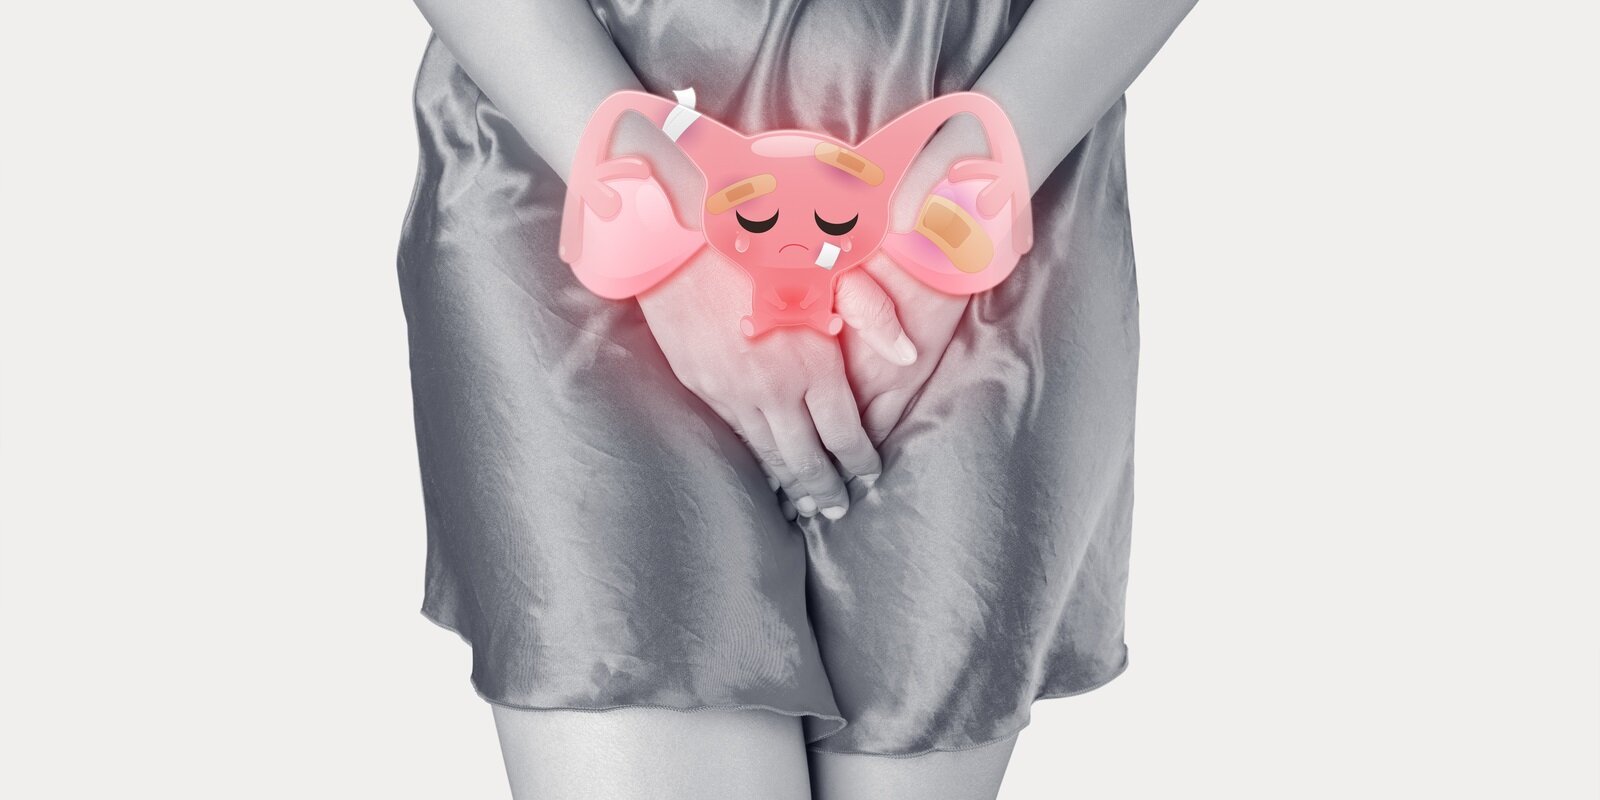 cartoon illustration of bad uterus is on the woman body